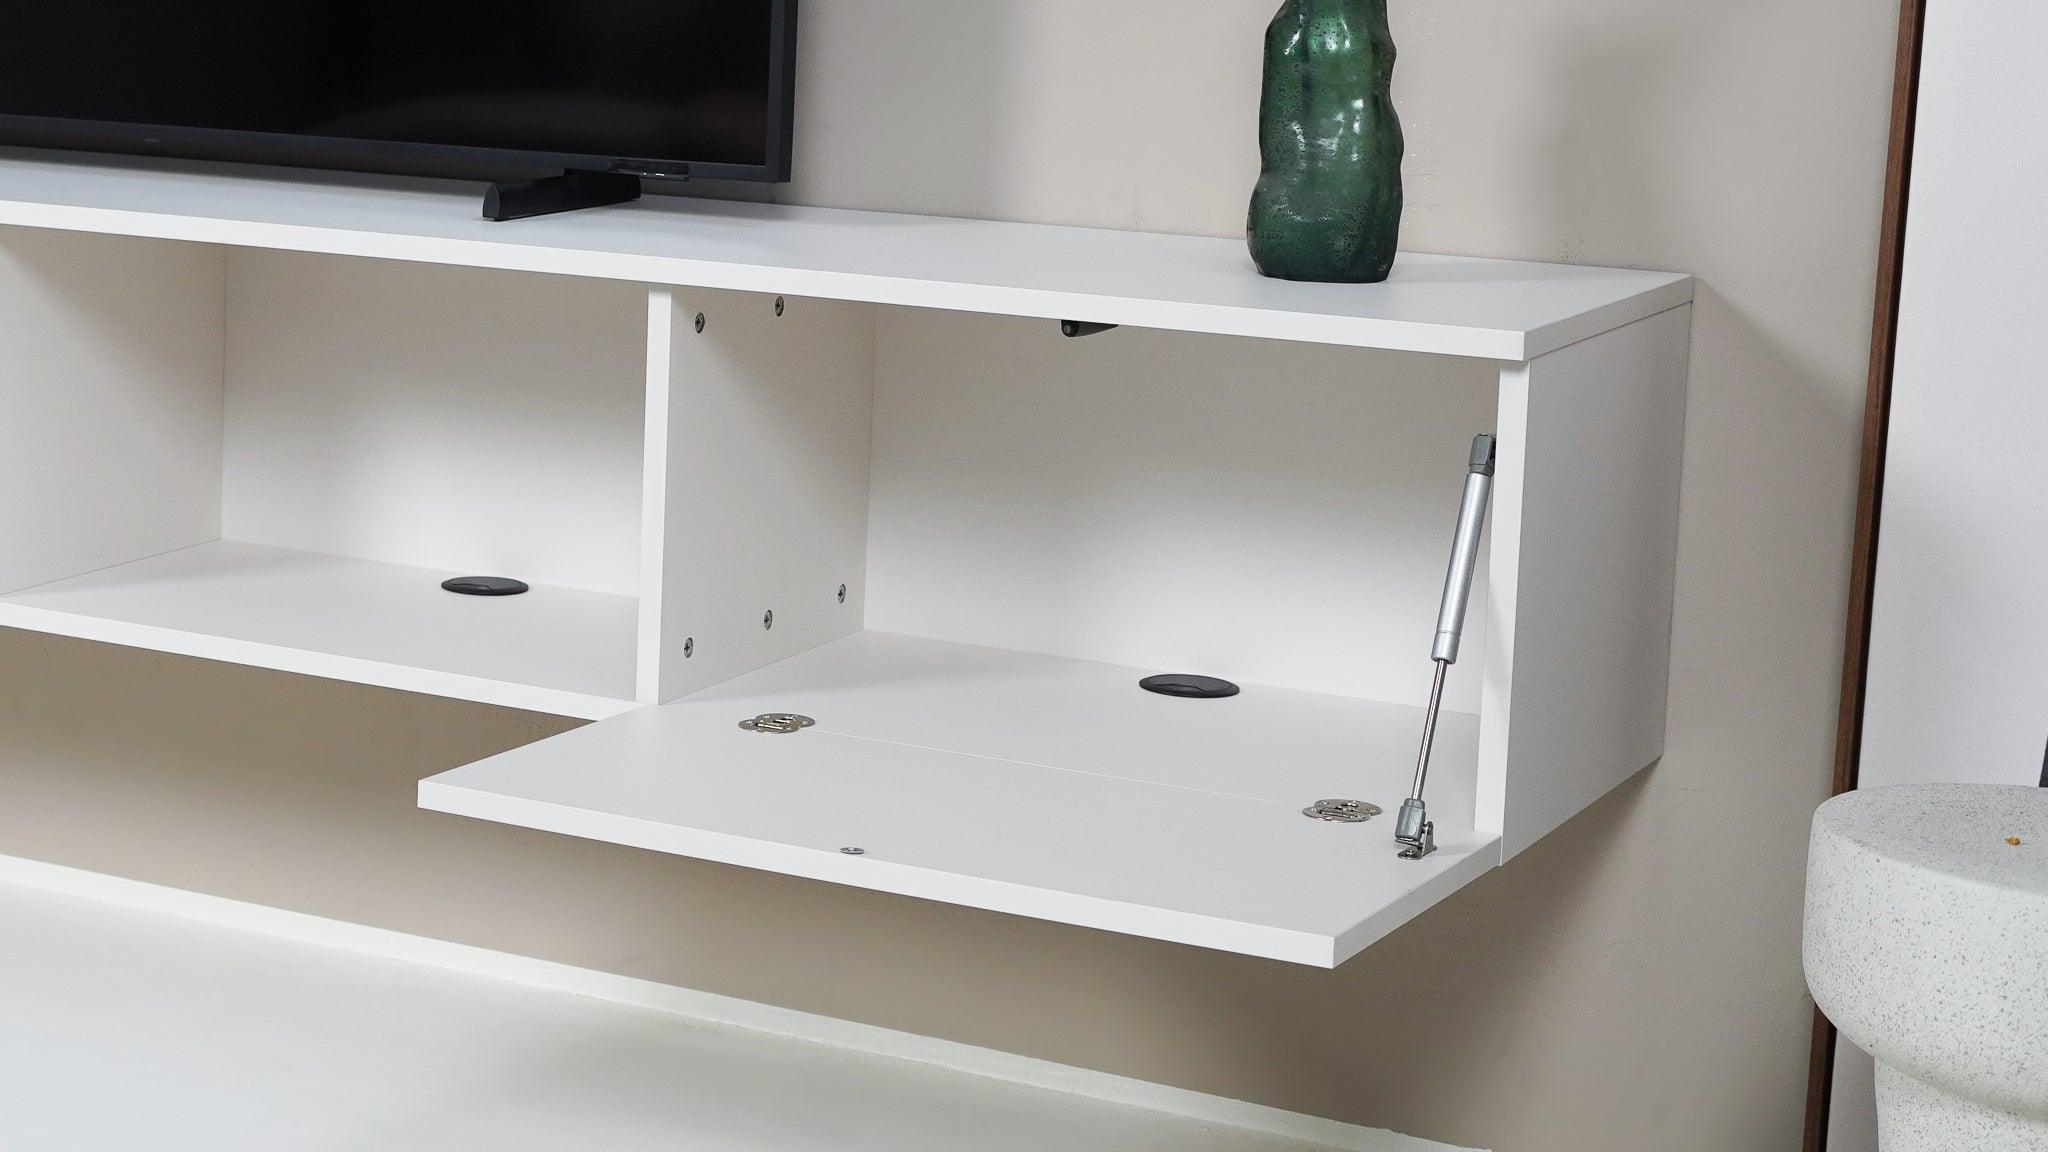 TV meubel - Beige  - 3 kleppen en open vak - {{ product.type }} - Kas20